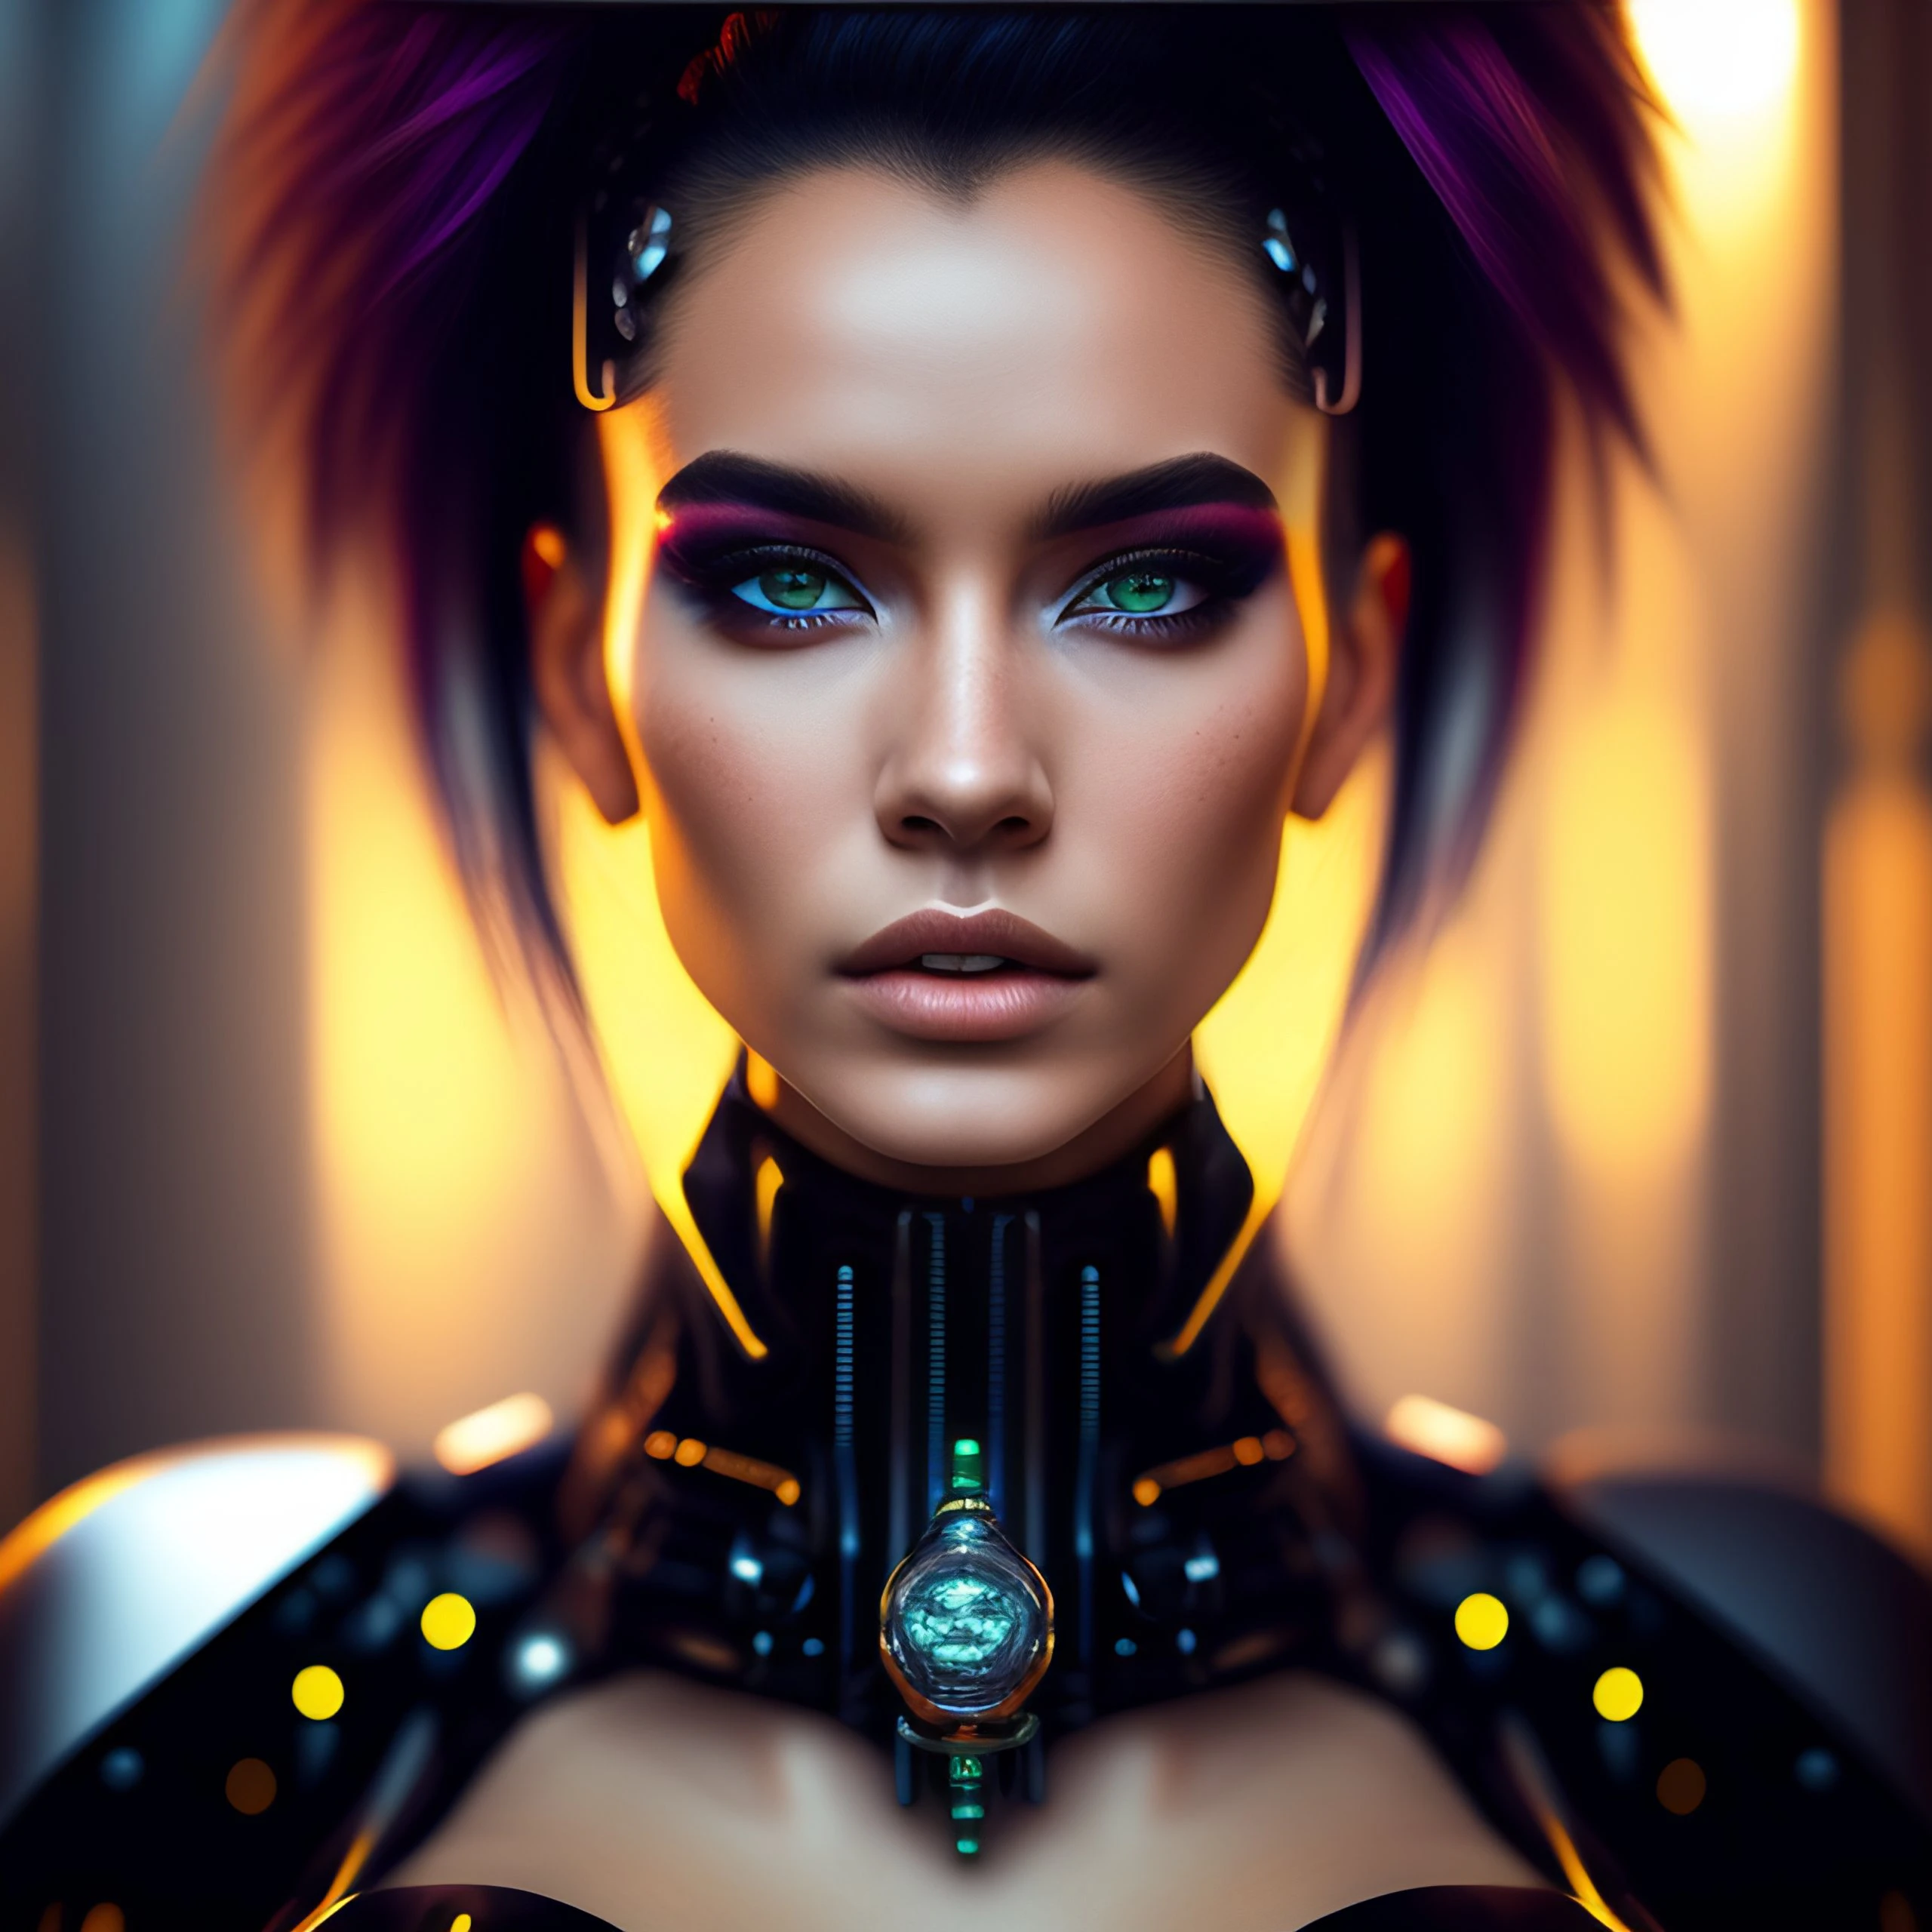 Hochspannung trifft auf Mode: Was macht das perfekte Cyberpunk-Charakterdesign aus?